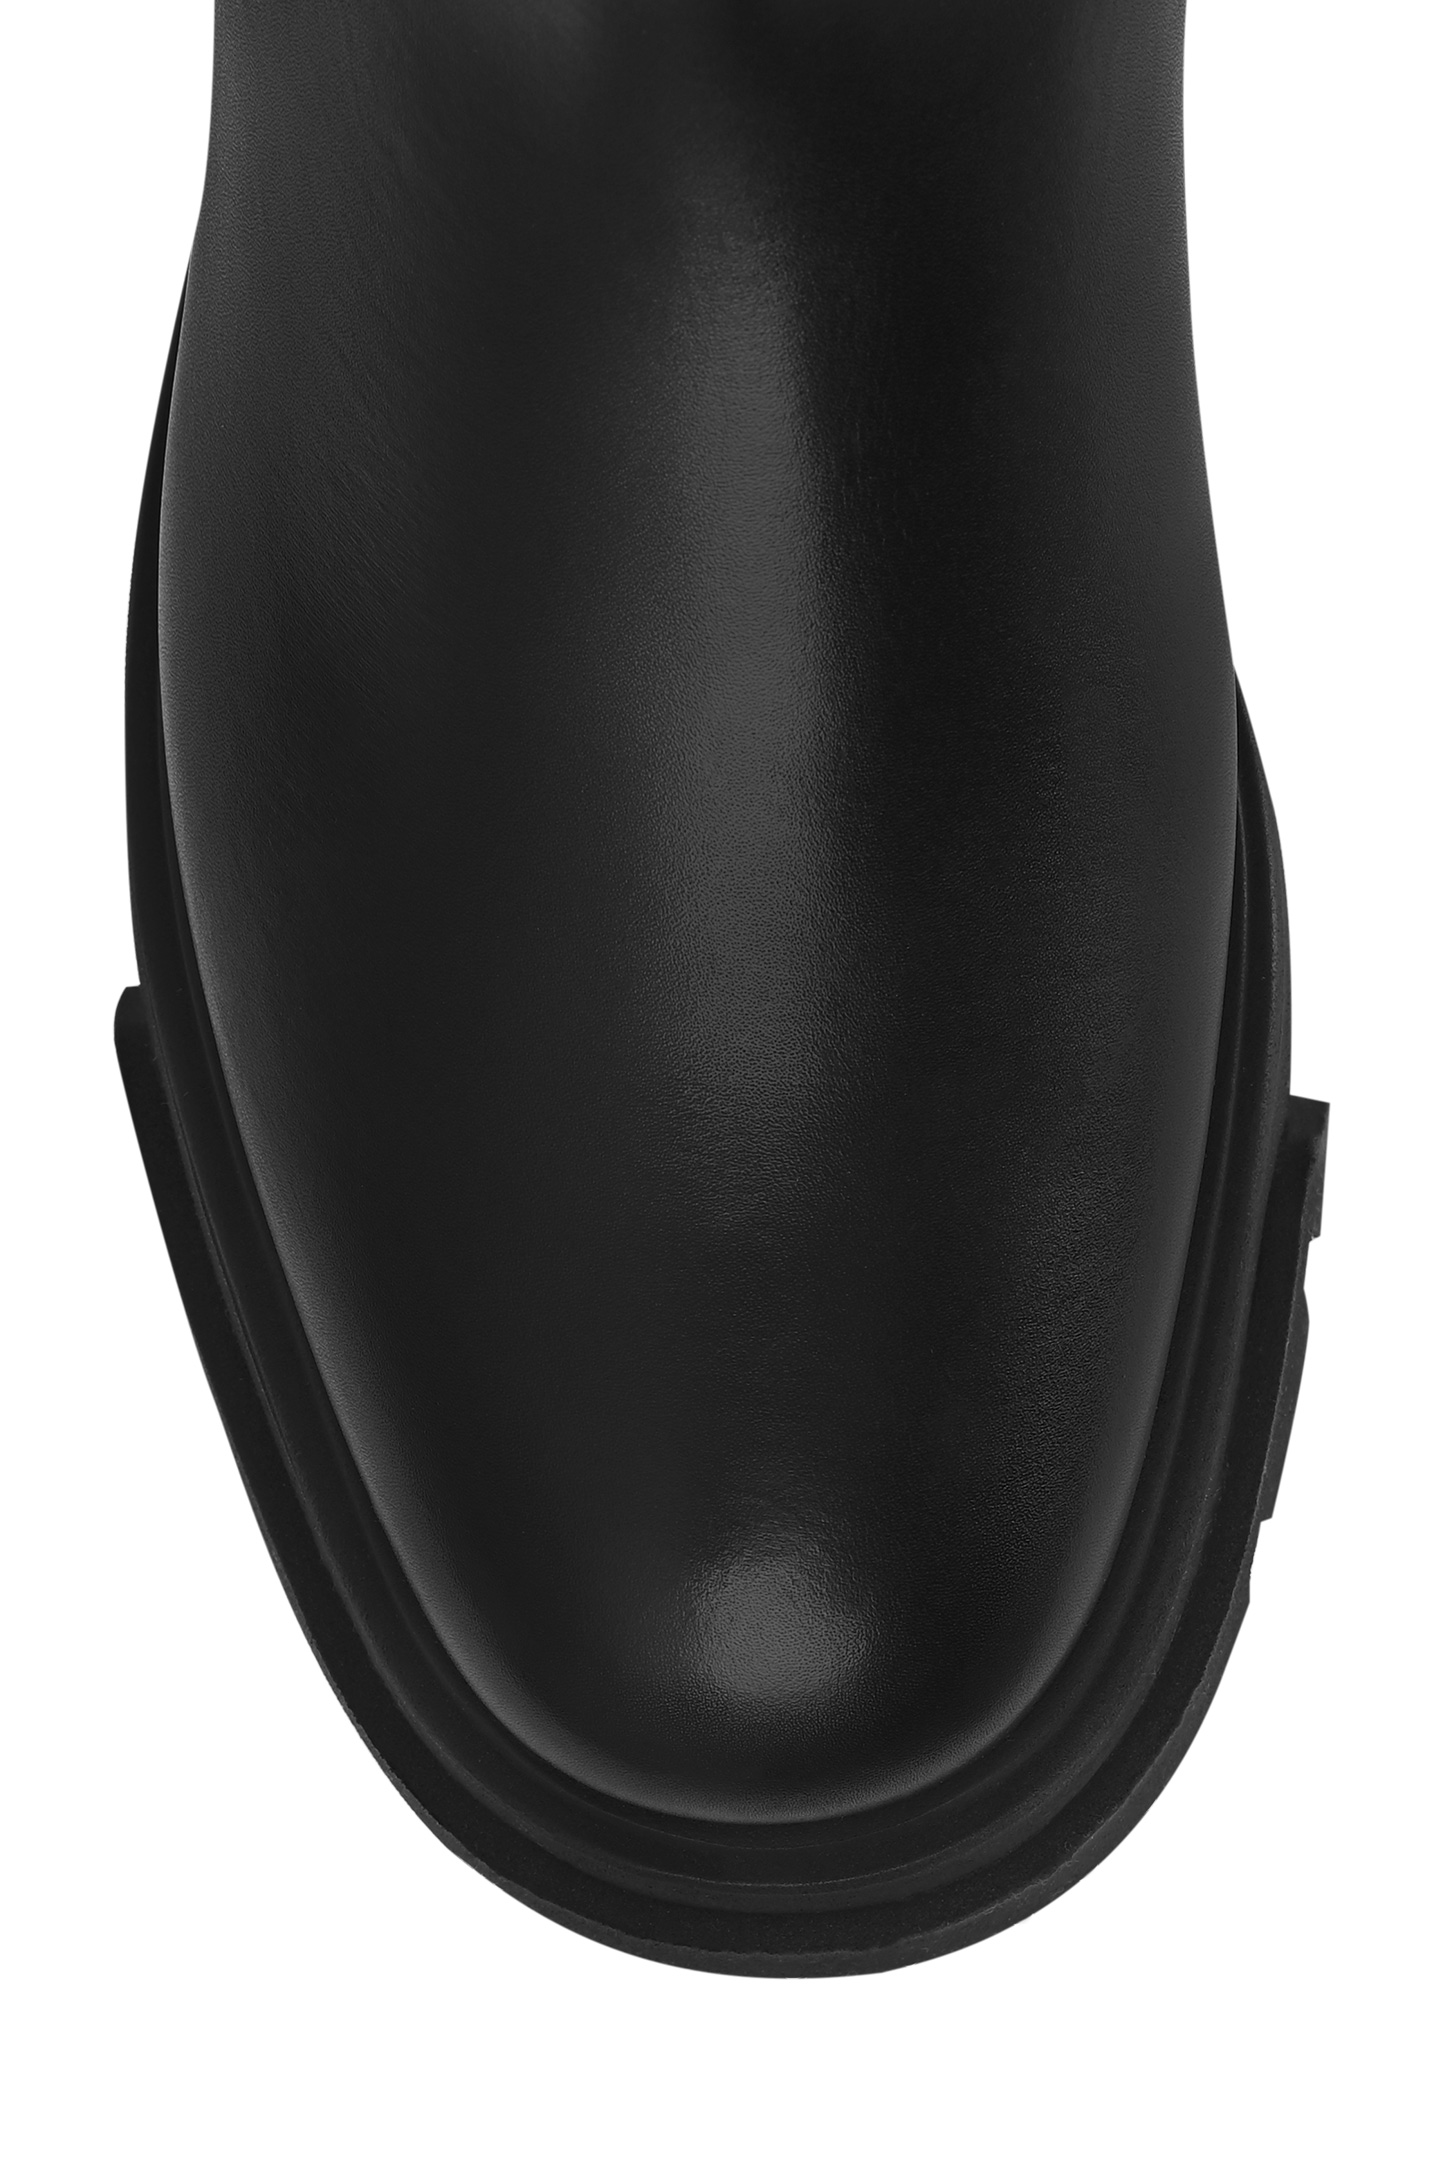 Ботинки BRUNELLO  CUCINELLI MZIDG2535P, цвет: Черный, Женский